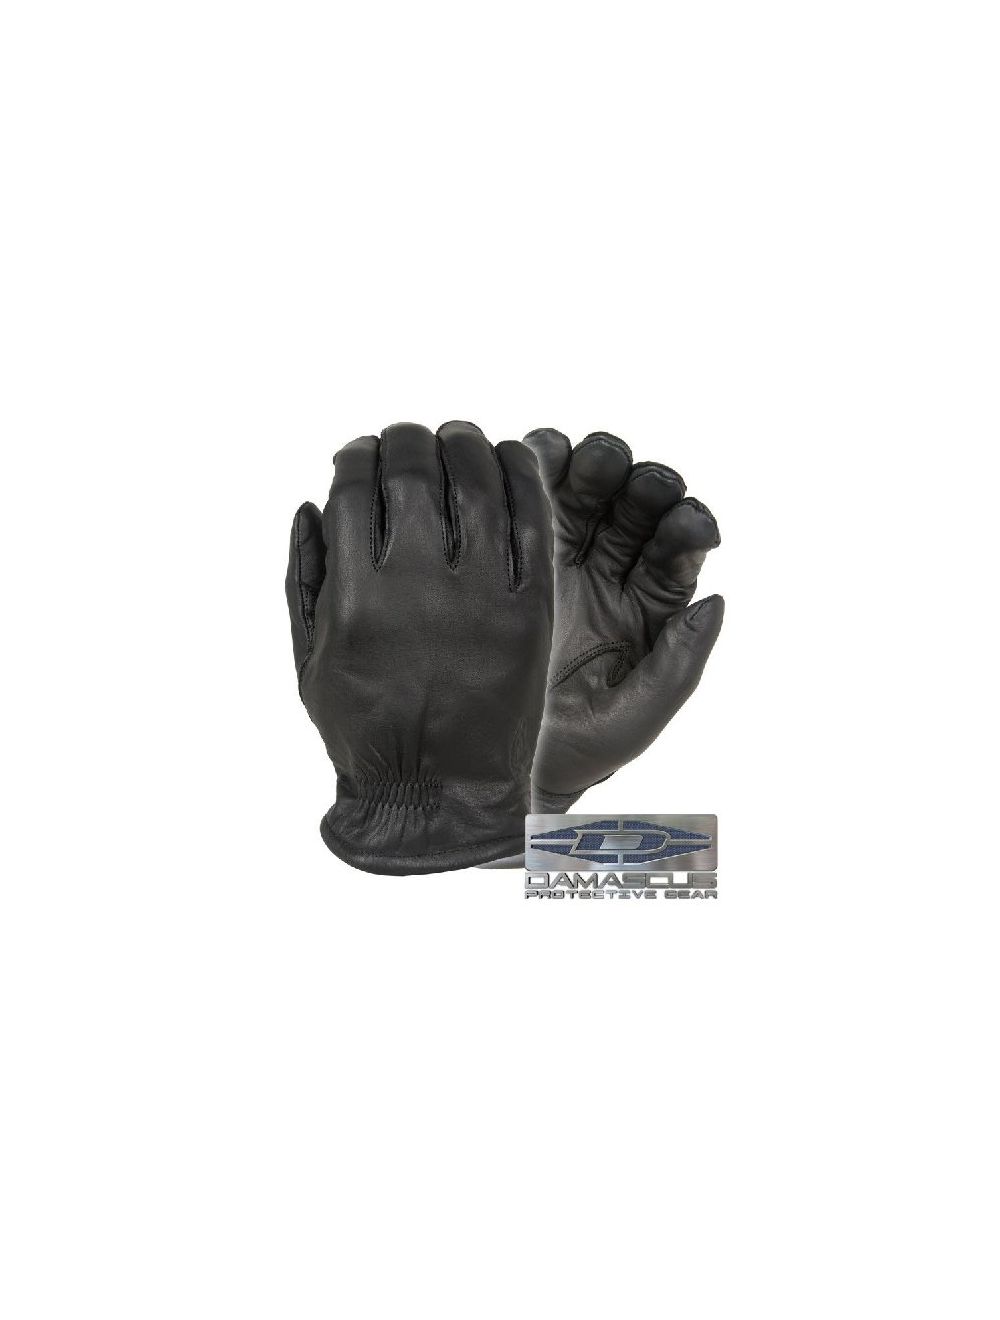 Frisker S Leather Gloves